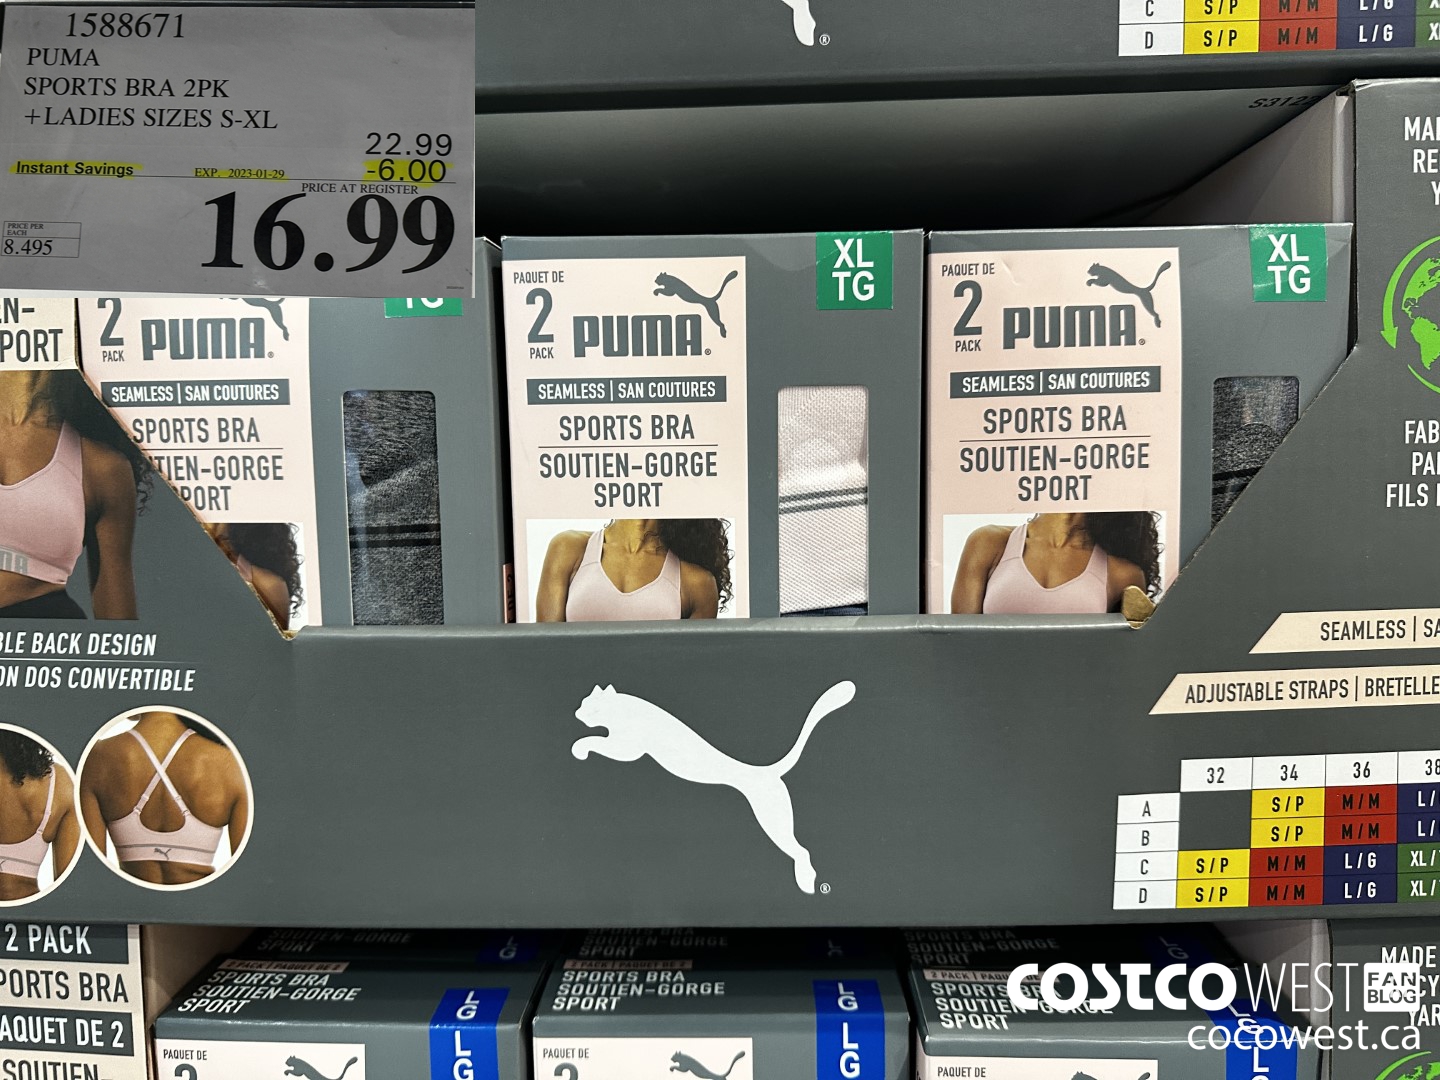 Costco Puma Ladies' Sports Bra, 3pk $15.99